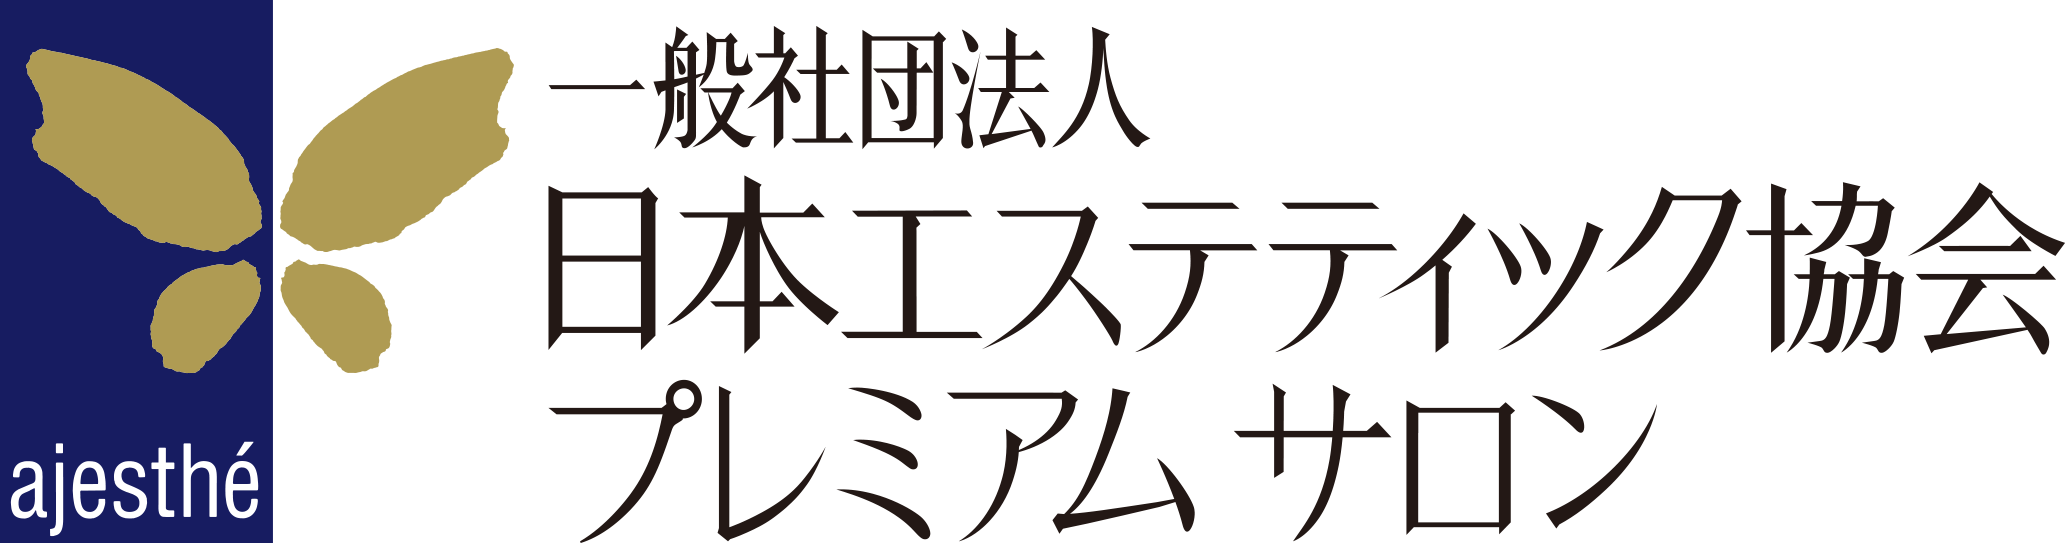 日本エステティック協会プレミアムサロンロゴ